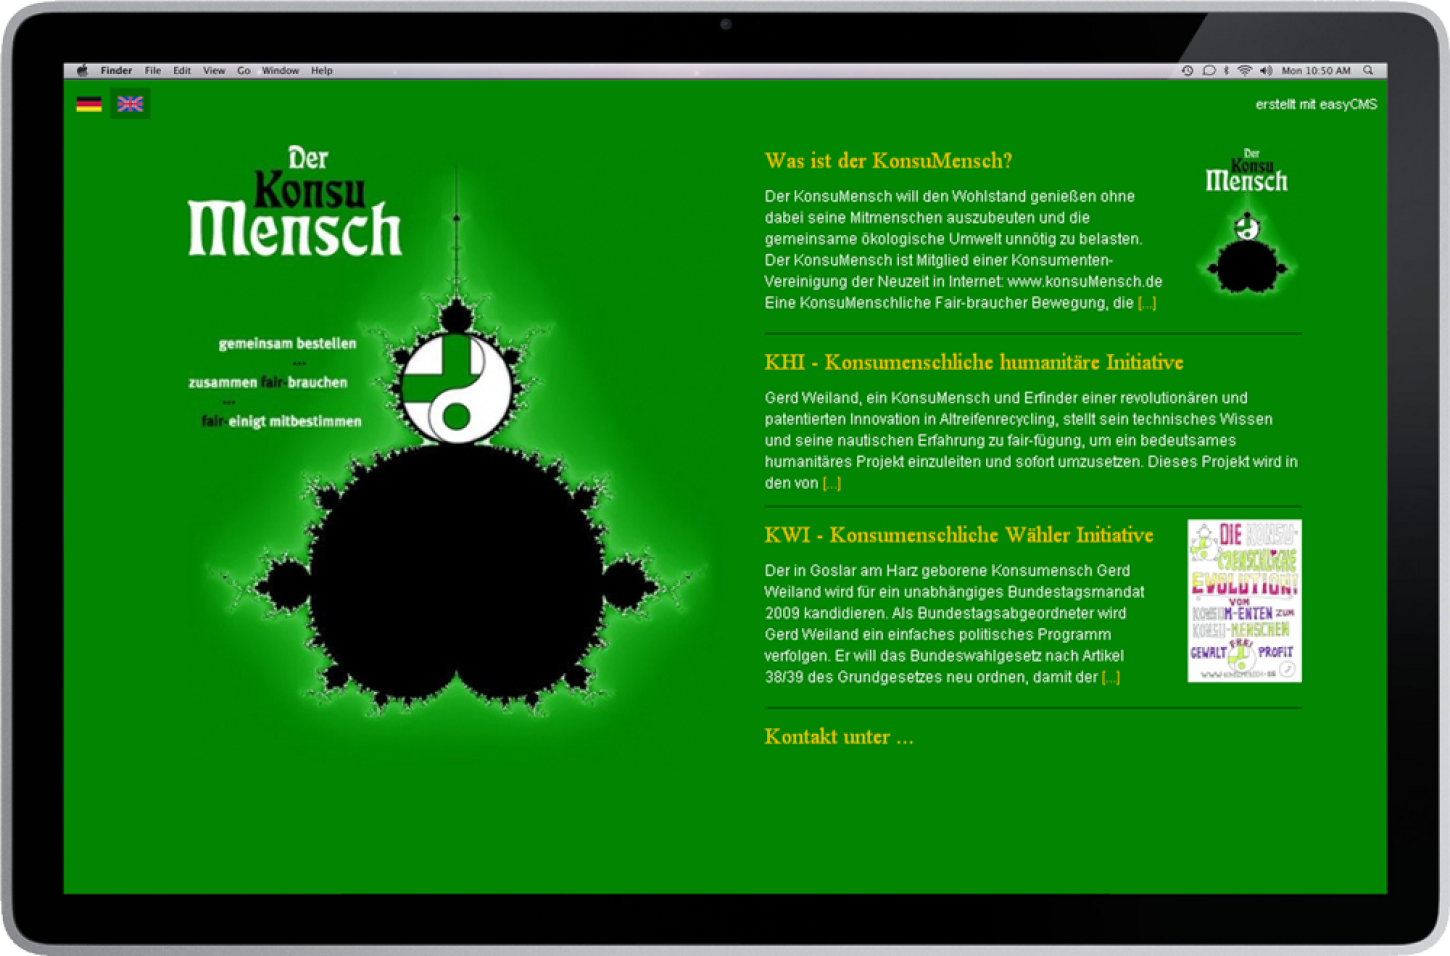 Direkt zu www.konsumensch.de